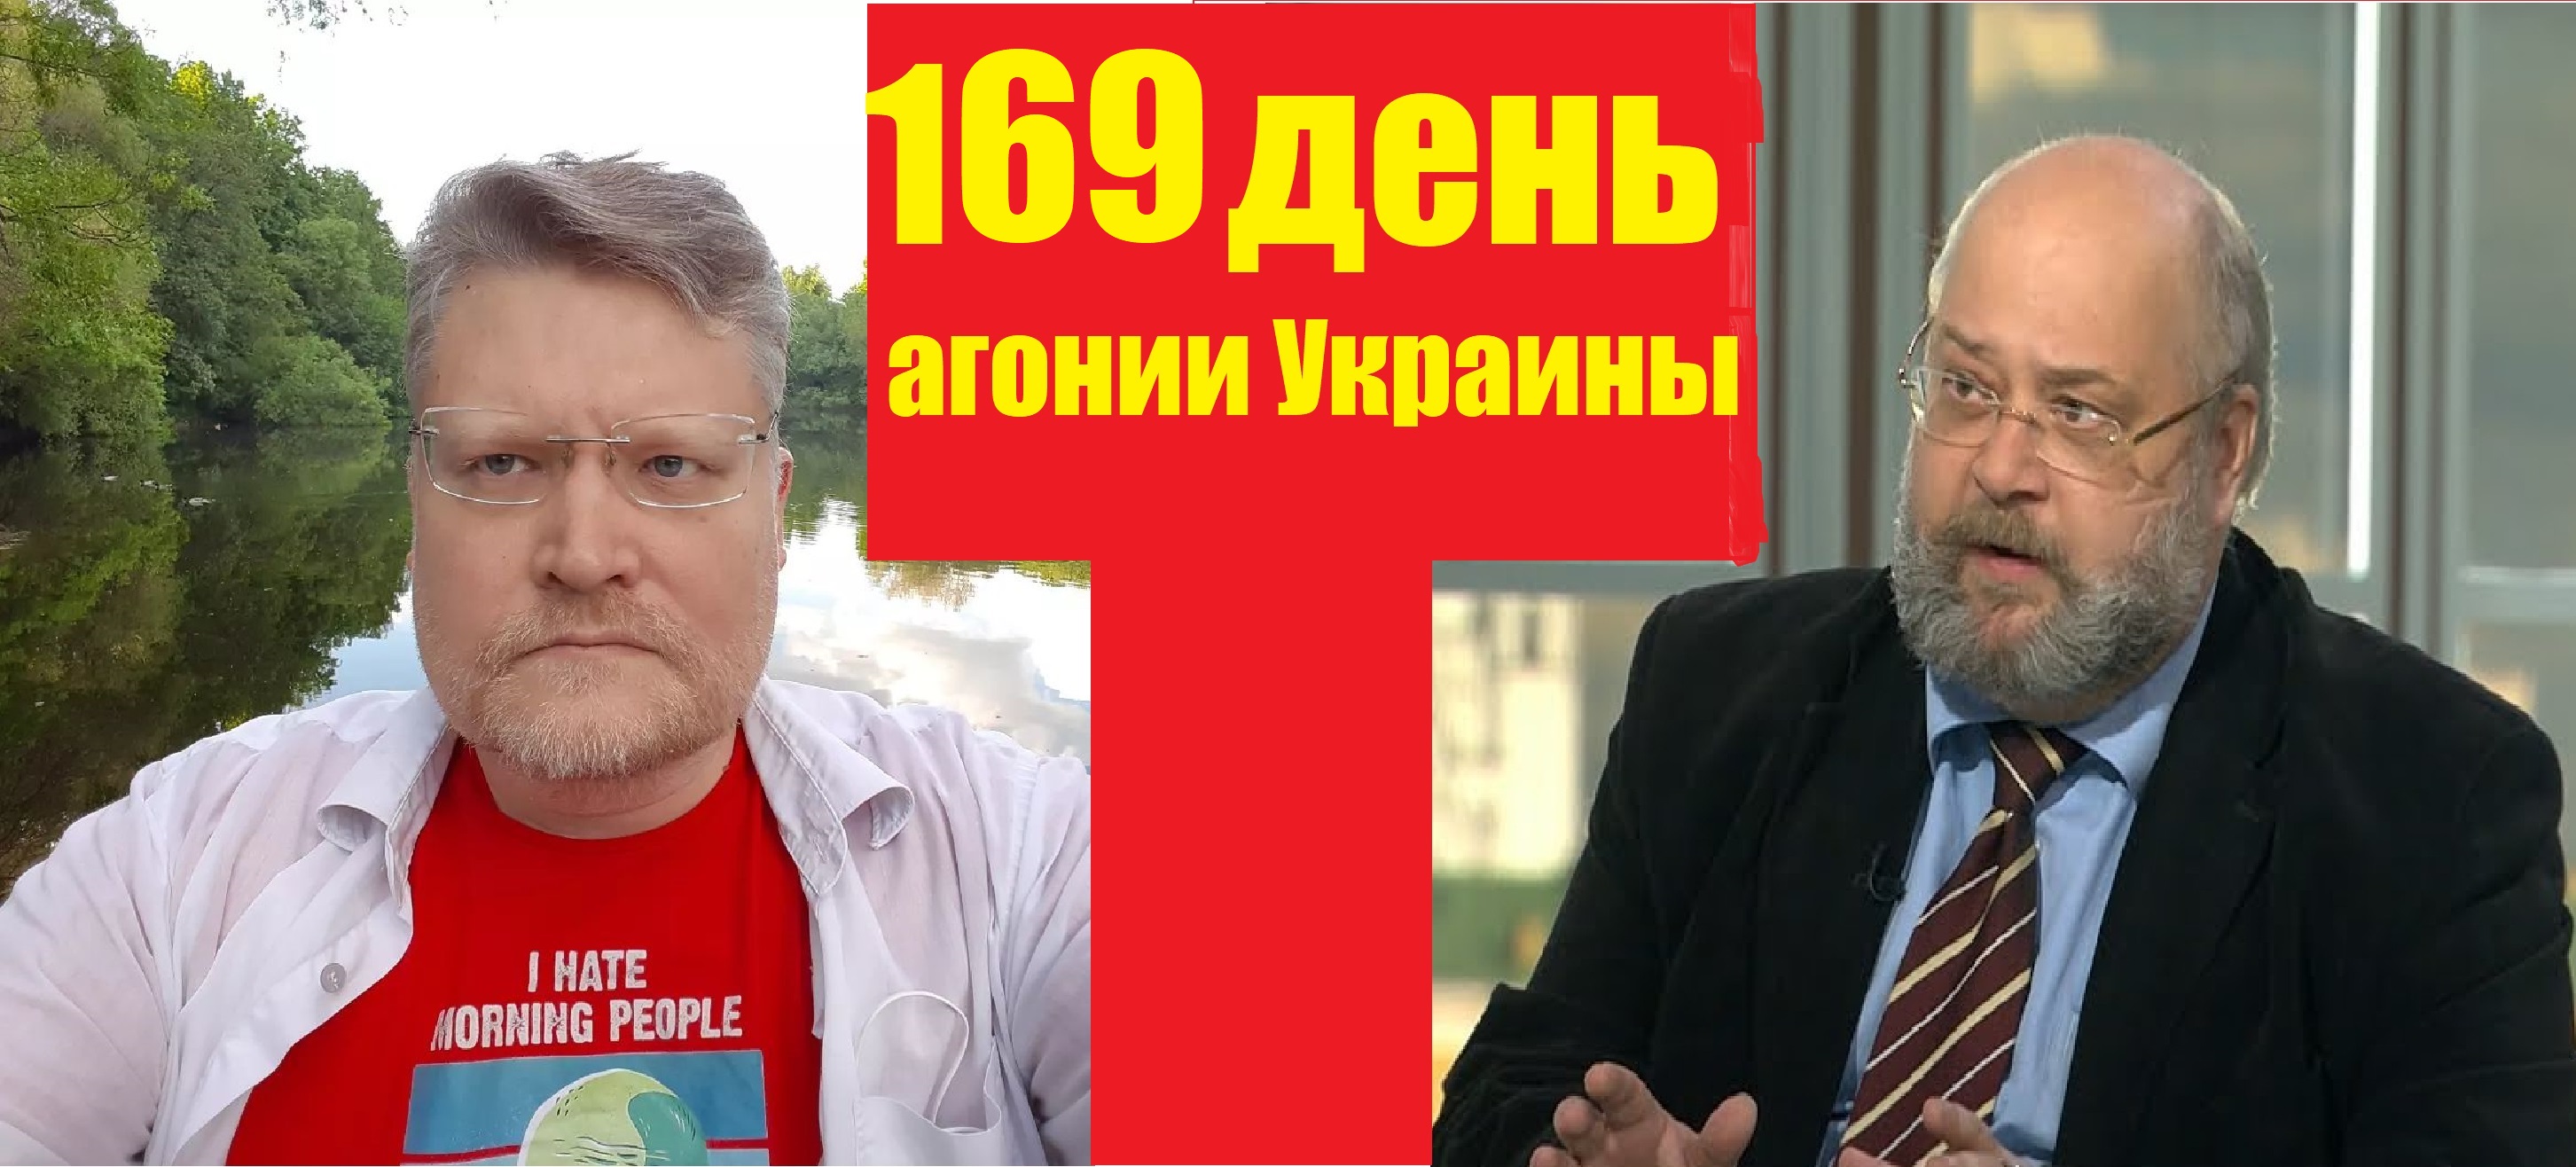 169 дней. Историк Украины.